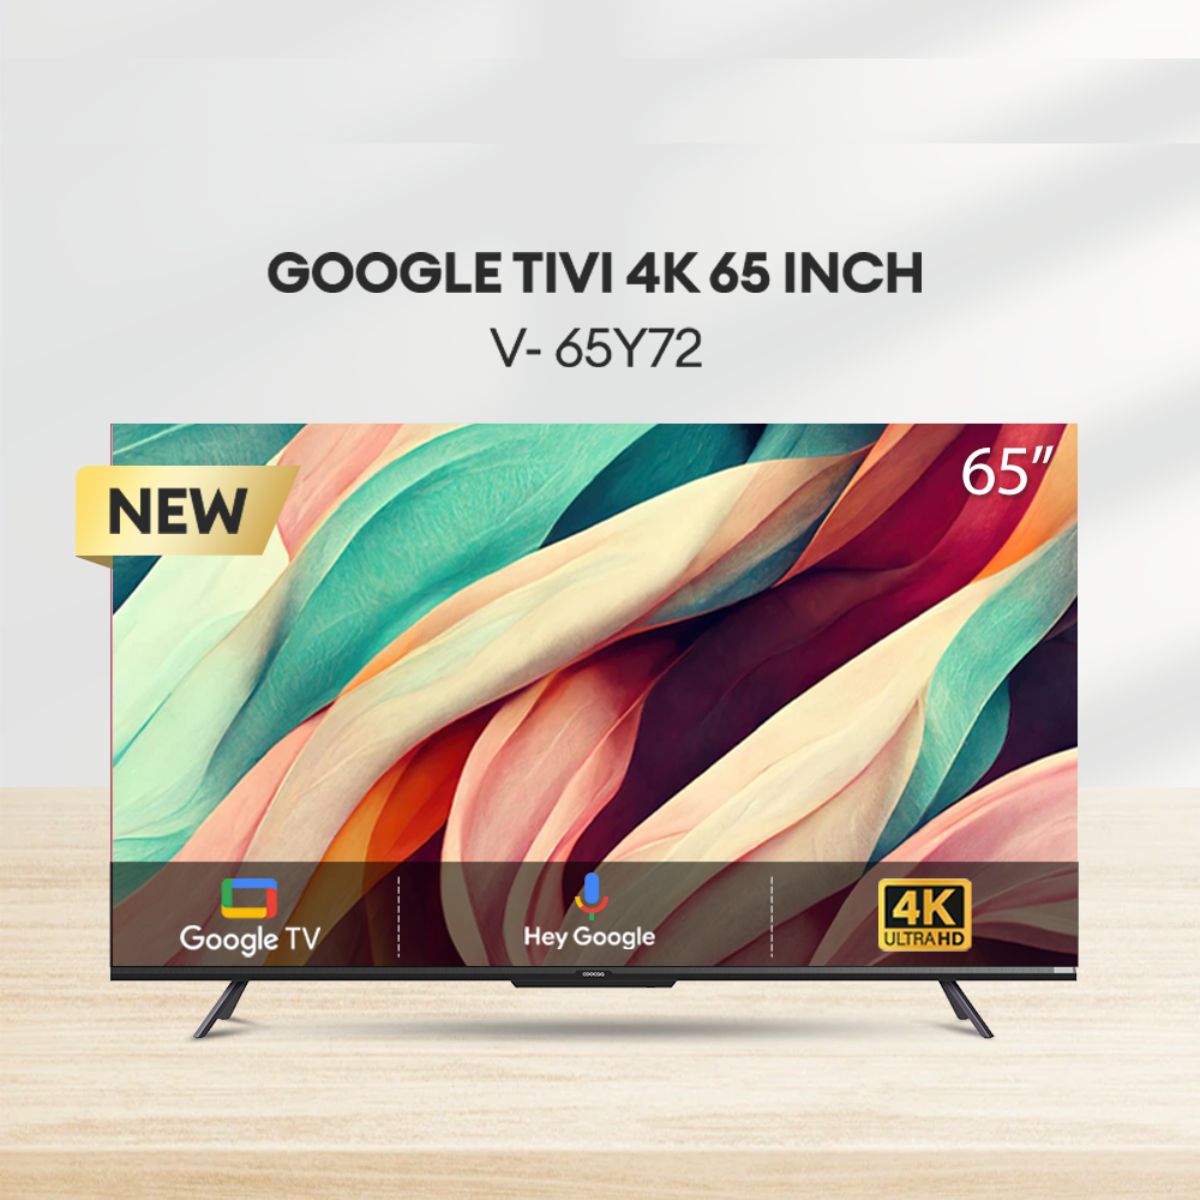 Google Tivi 65inch 4K UHD COOCAA 65Y72 2 loa 10W, màn hình LED viền siêu mỏng